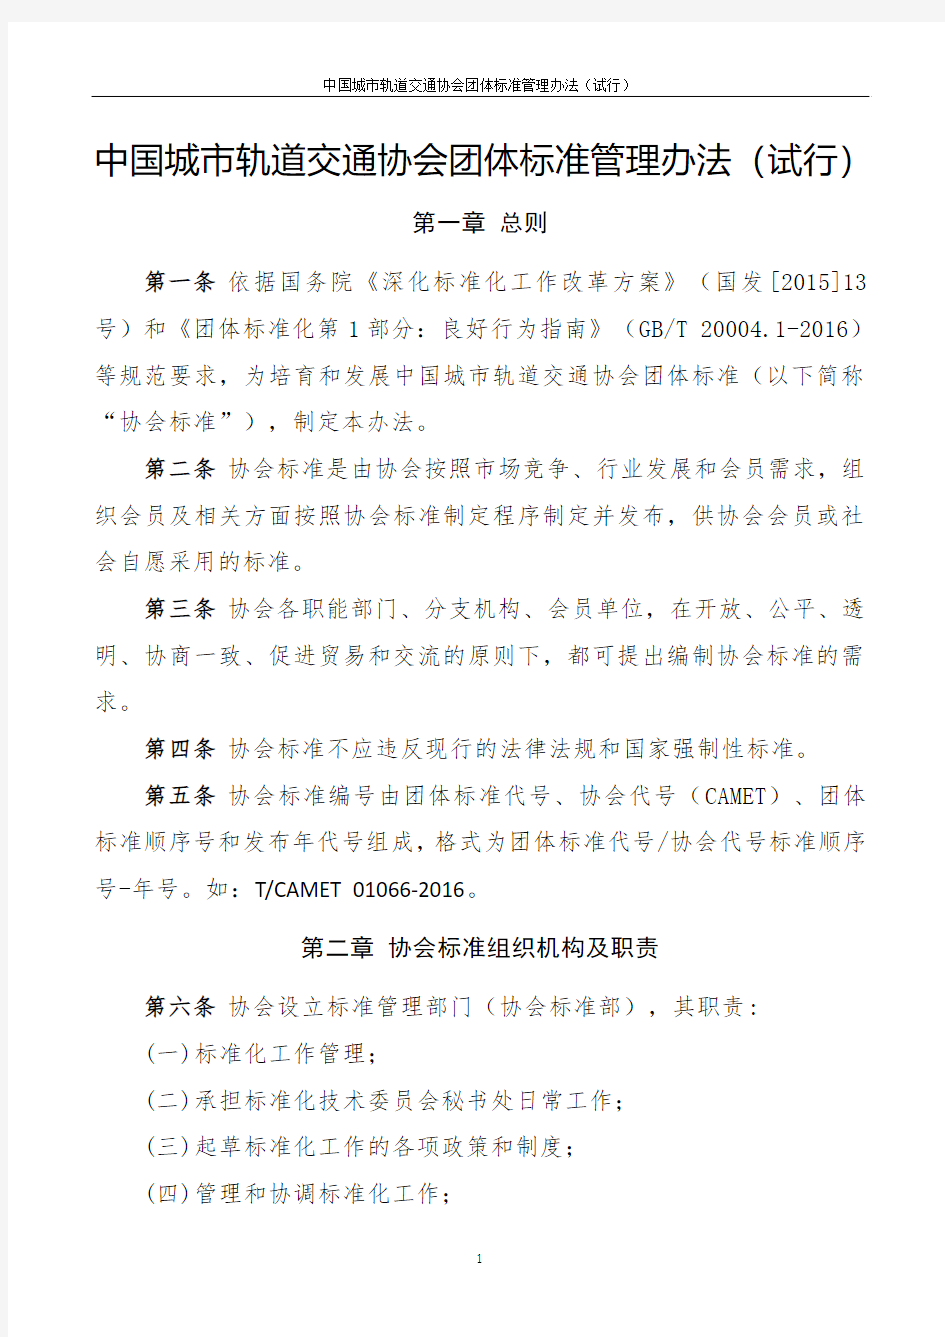 中国城市轨道交通协会团体标准管理办法-试行(170306)